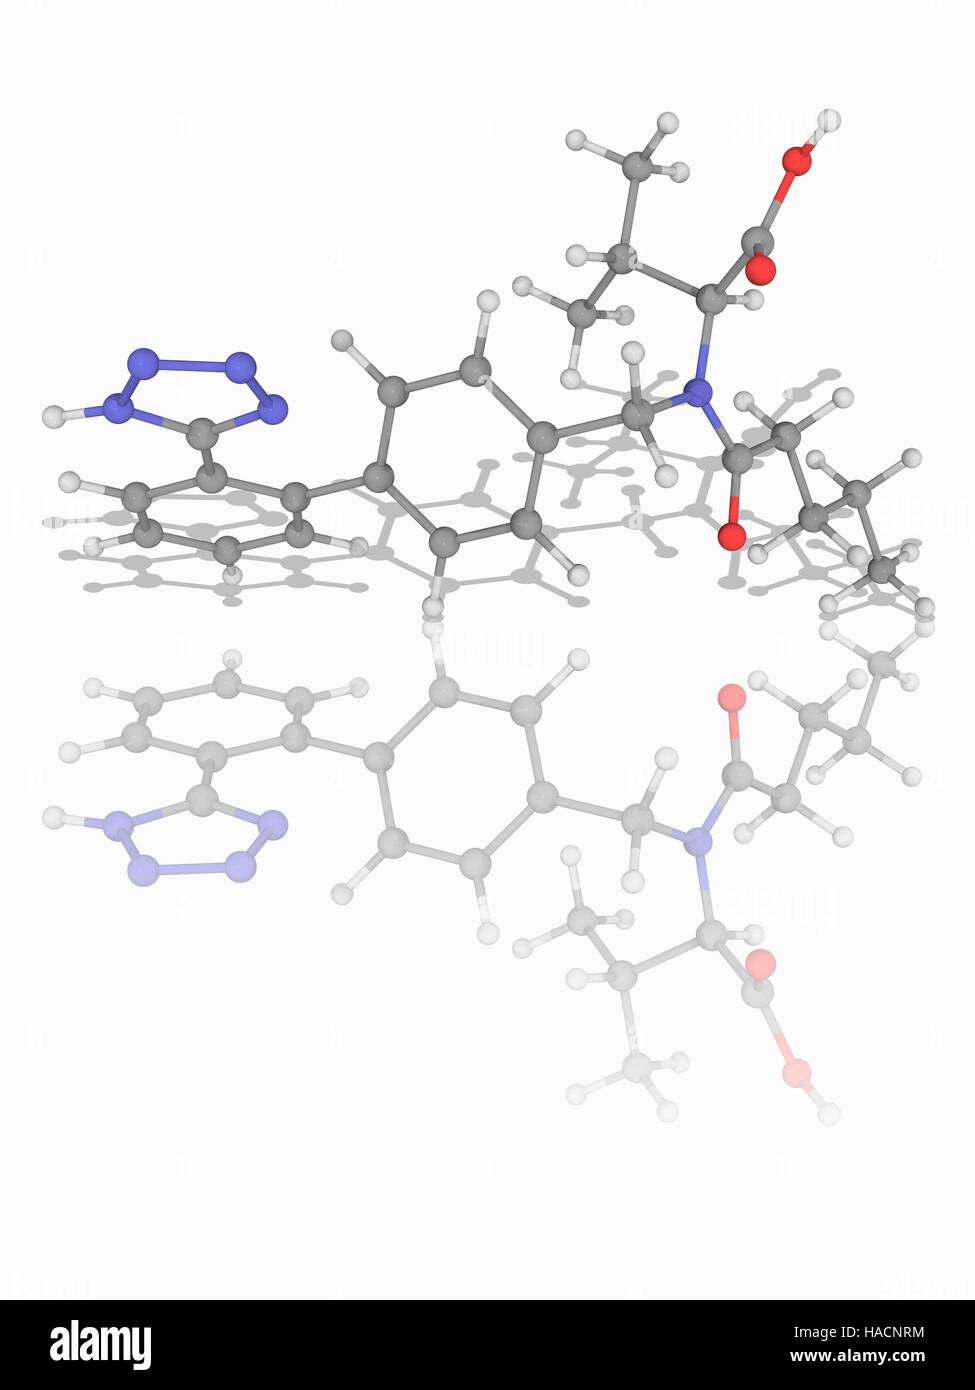 Valsartan. Molekulares Modell des Medikament Valsartan (C24. H29. N5. O3), ein Angiotensin-II-Rezeptor-Antagonisten zur Behandlung von Bluthochdruck, Herzinsuffizienz und Post-myokardiale Infarktbildung. Atome als Kugeln dargestellt werden und sind farblich gekennzeichnet: Kohlenstoff (grau), Wasserstoff (weiß), Stickstoff (blau) und Sauerstoff (rot). Abbildung. Stockfoto